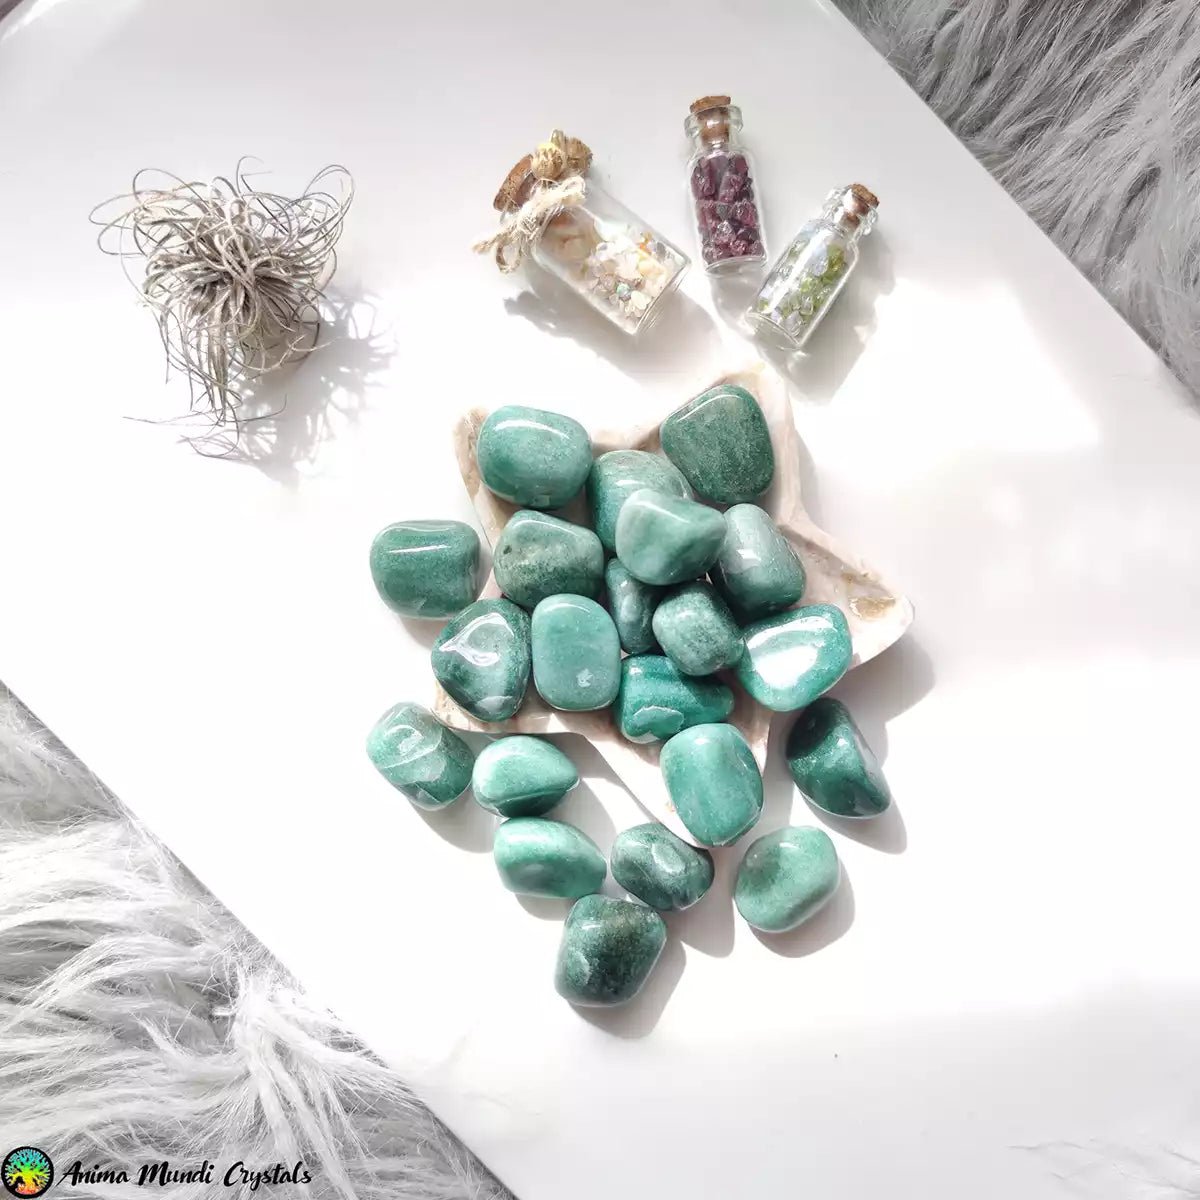 Green Quartzite- Aventurine Tumblestones - Anima Mundi Crystals